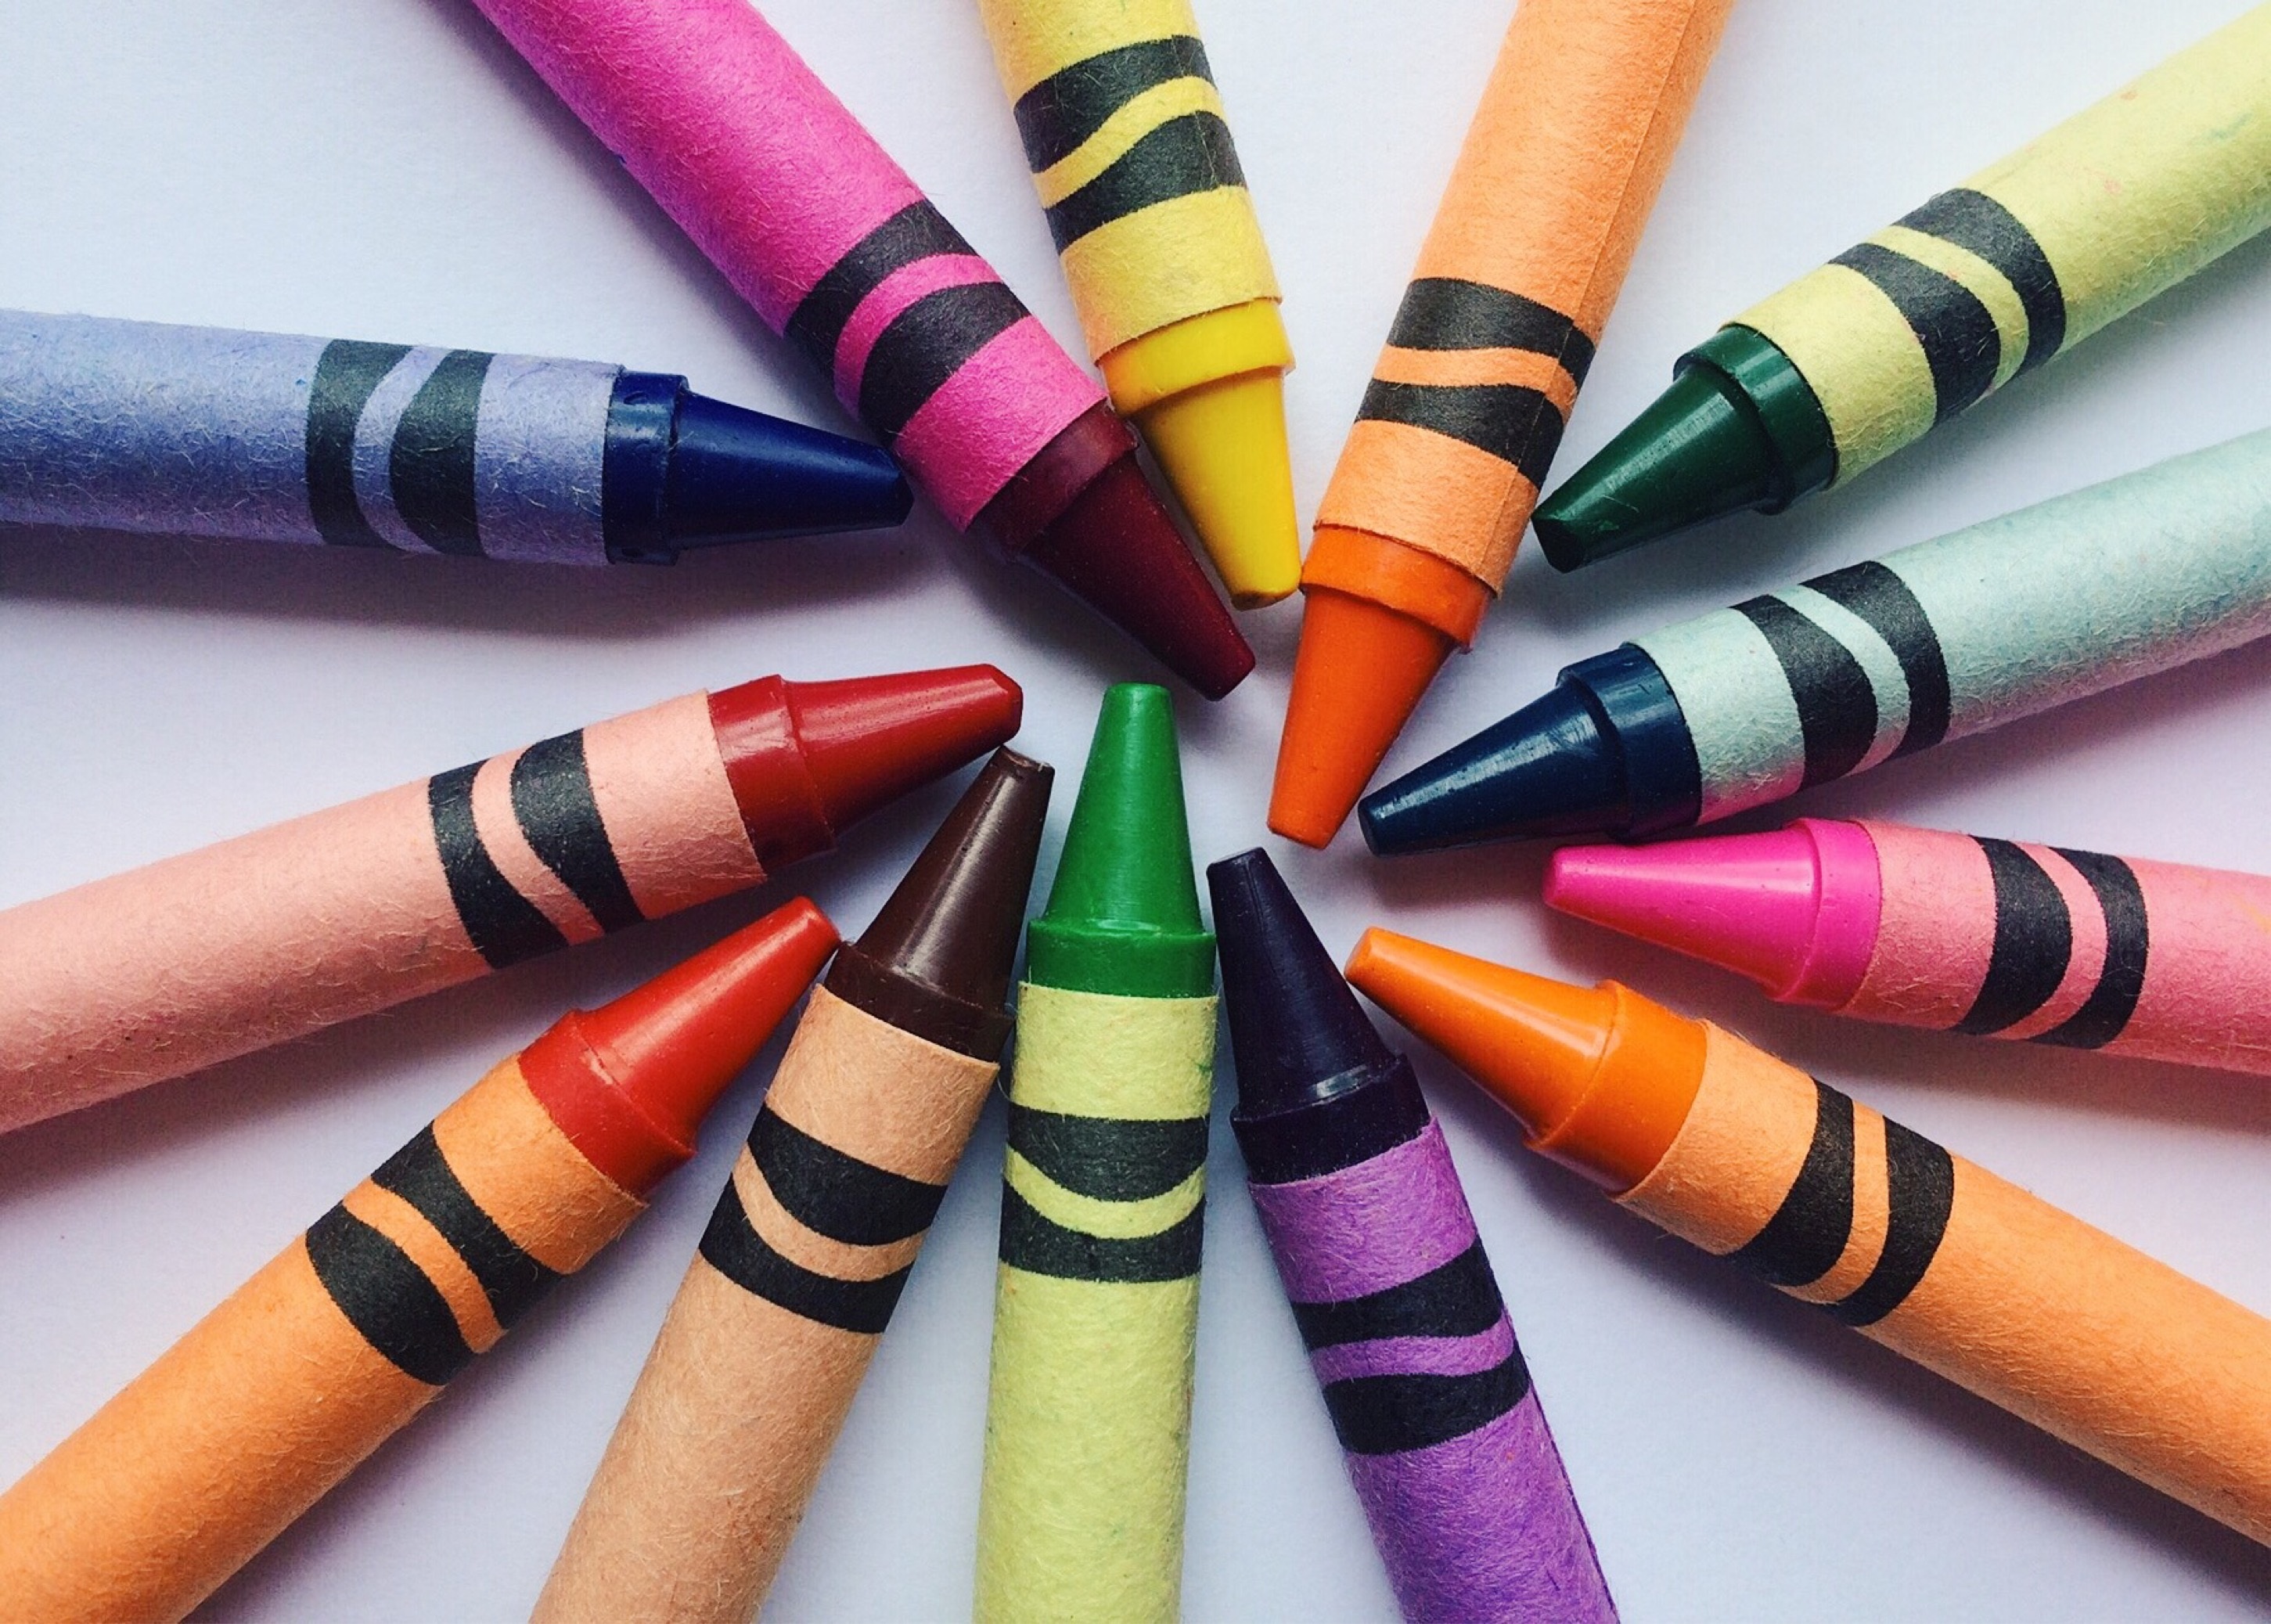 miscellanea, miscellaneous, multicolored, motley, colored pencils, colour pencils, wax pencils